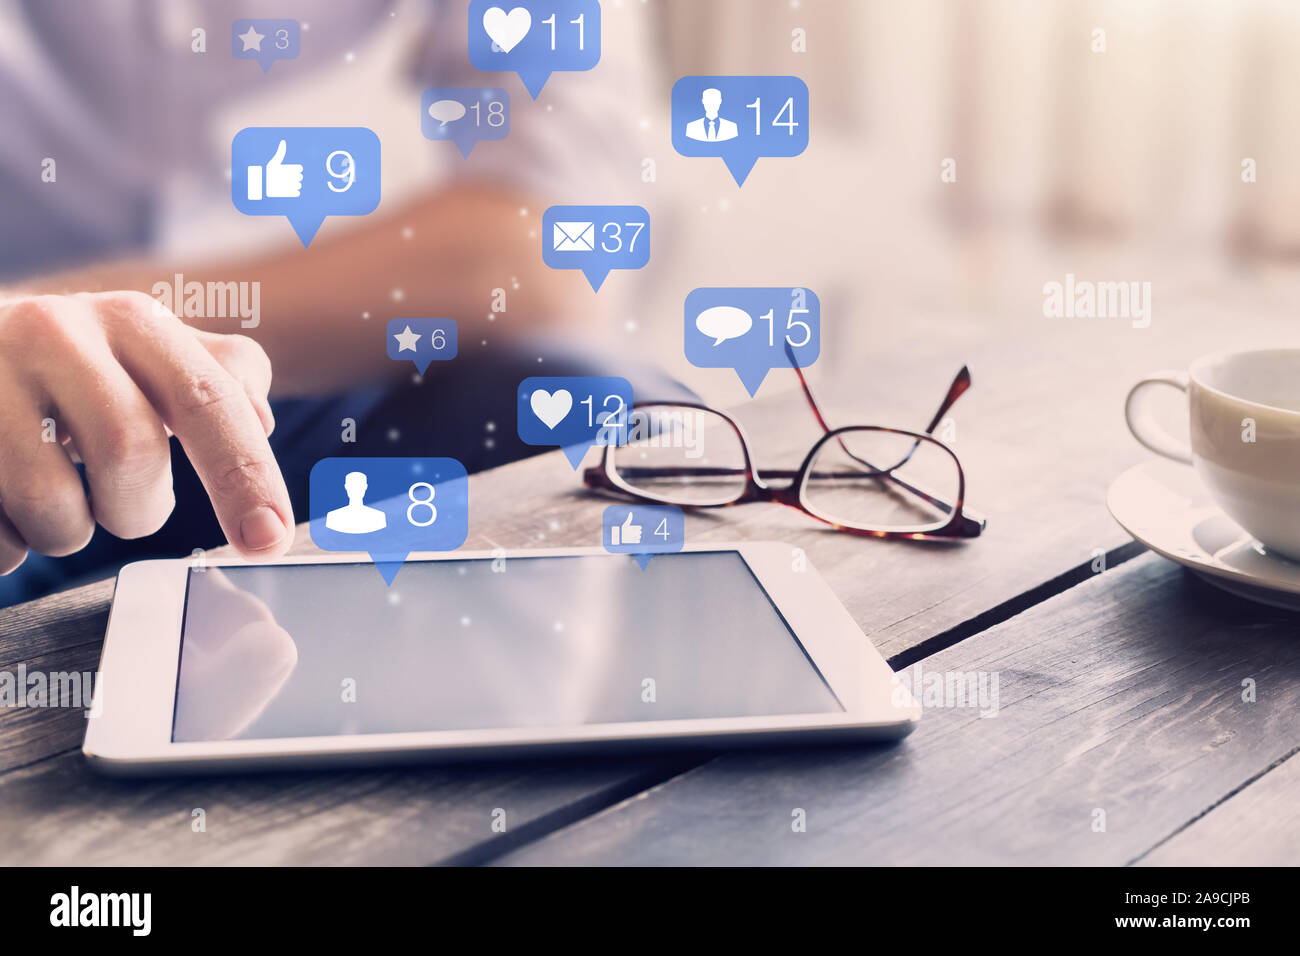 Réseau social media concept interactions avec des icônes de commentaires, d'un ami contact demandes et des messages indiquant l'engagement de utilisateurs et digital marke Banque D'Images